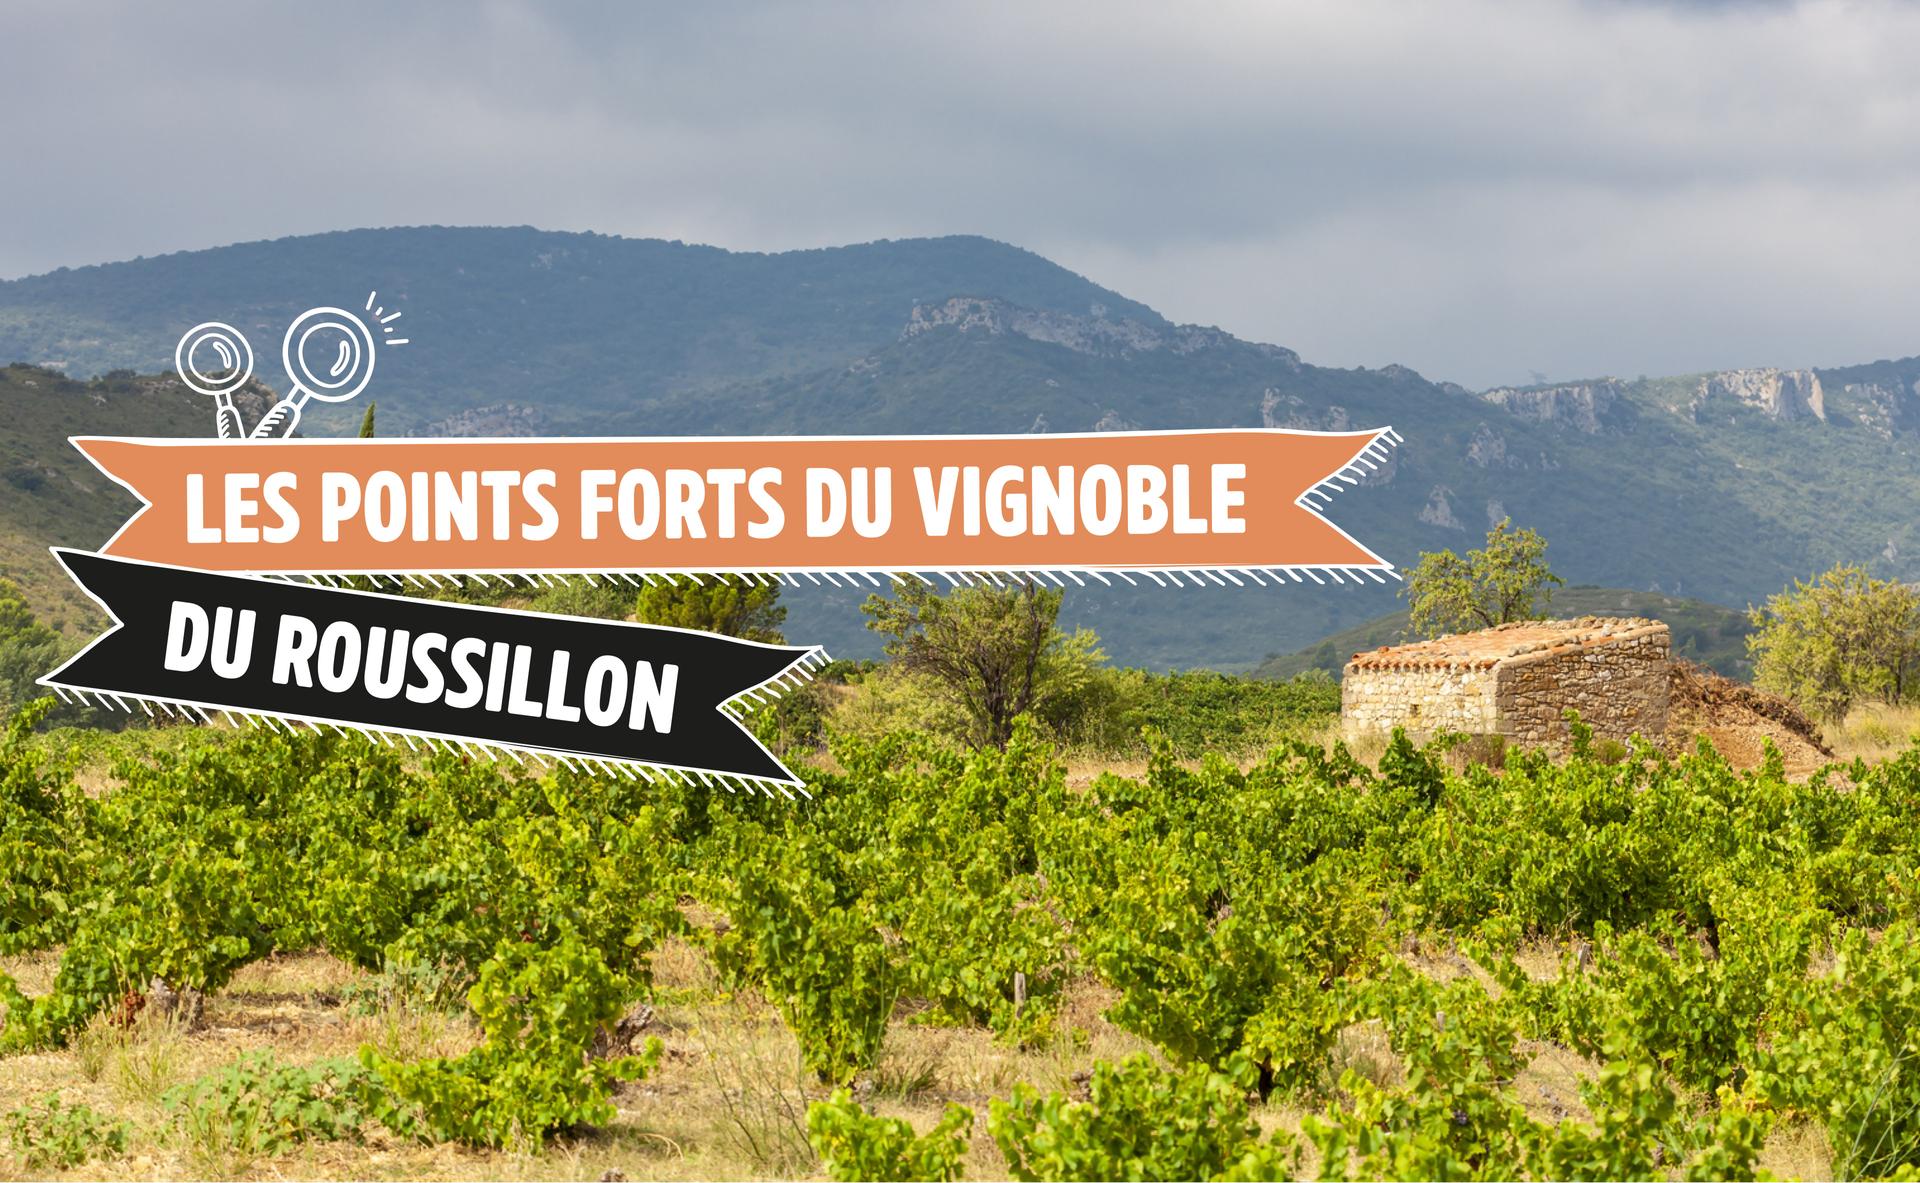 Les points forts du vignoble du Roussillon